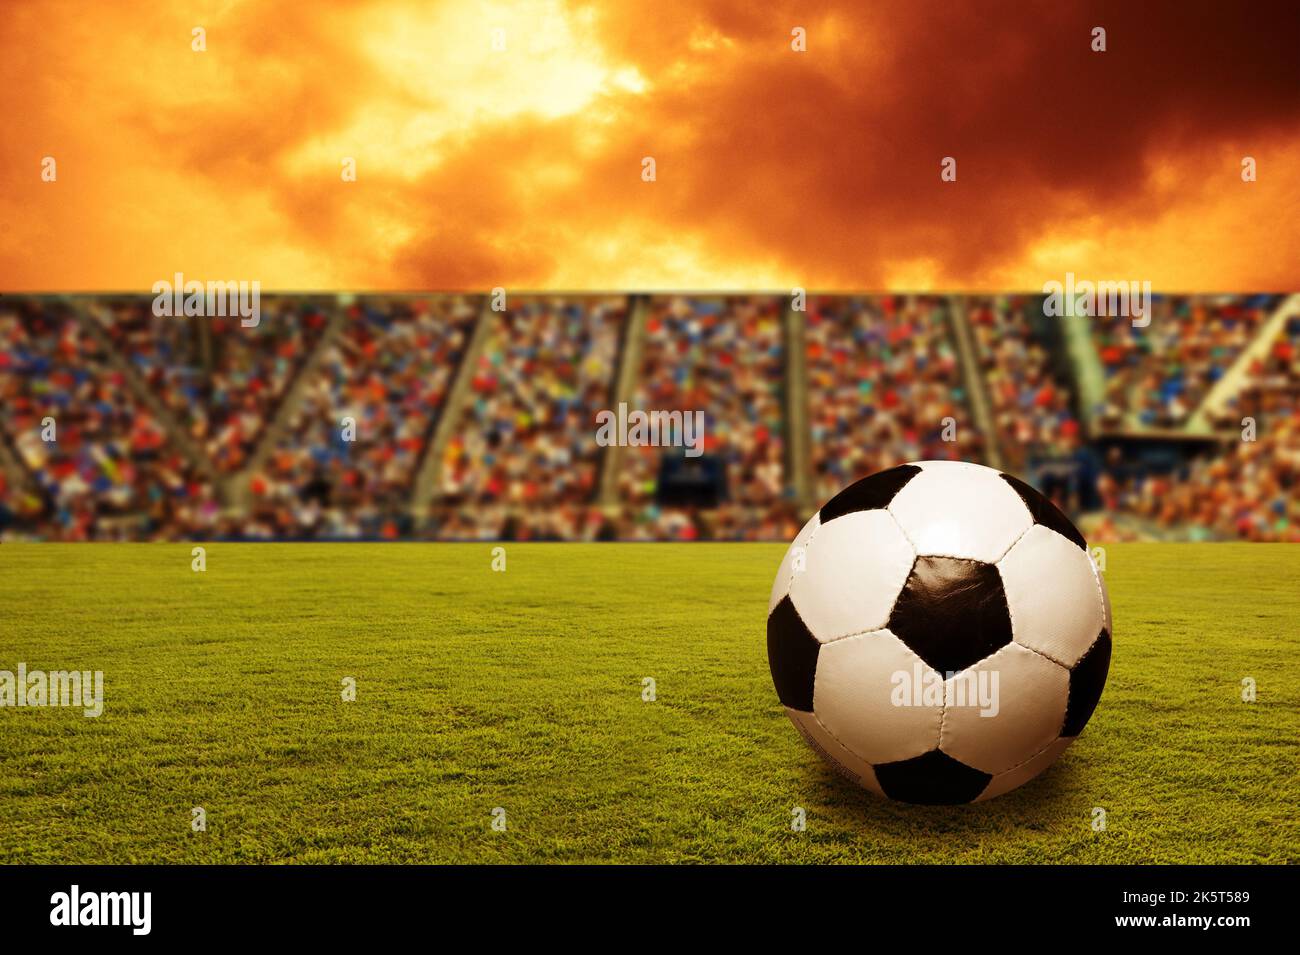 Fußball auf einem Spielfeld in einem Stadion Stockfoto